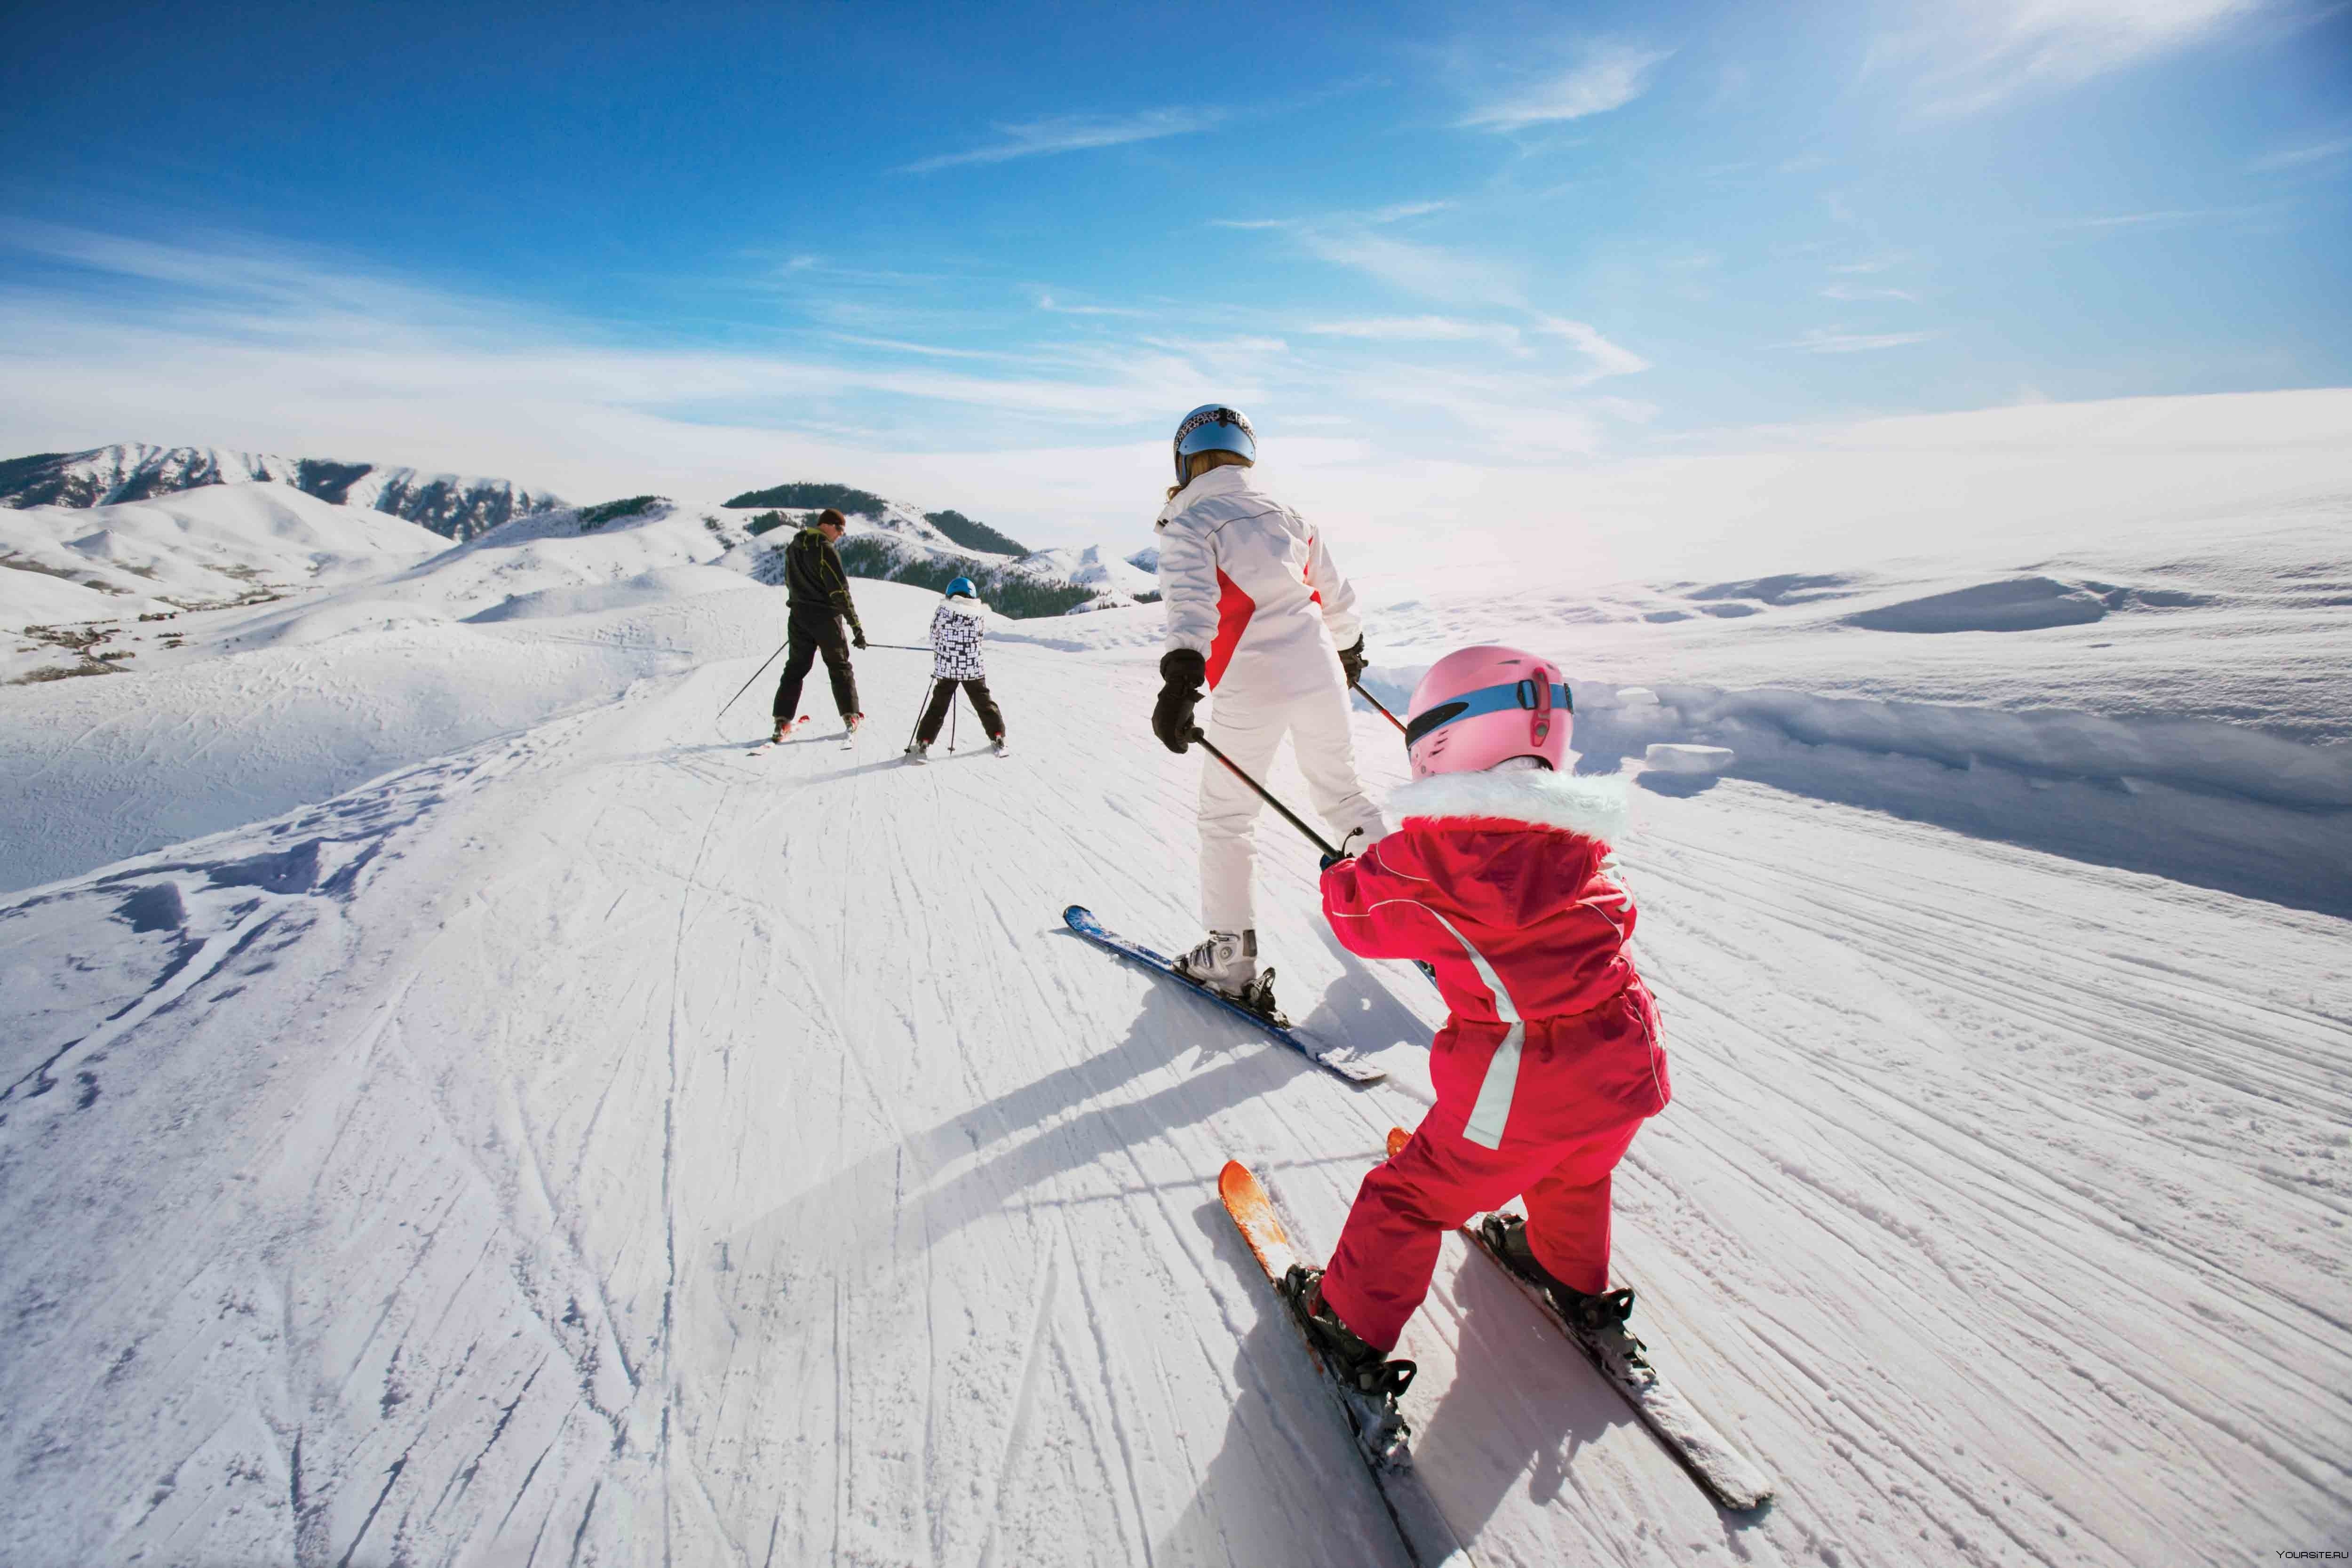 Покататься на горнолыжном курорте. Горные лыжи. Катание на горных лыжах. Зимний спорт. Катание на лыжах в горах.